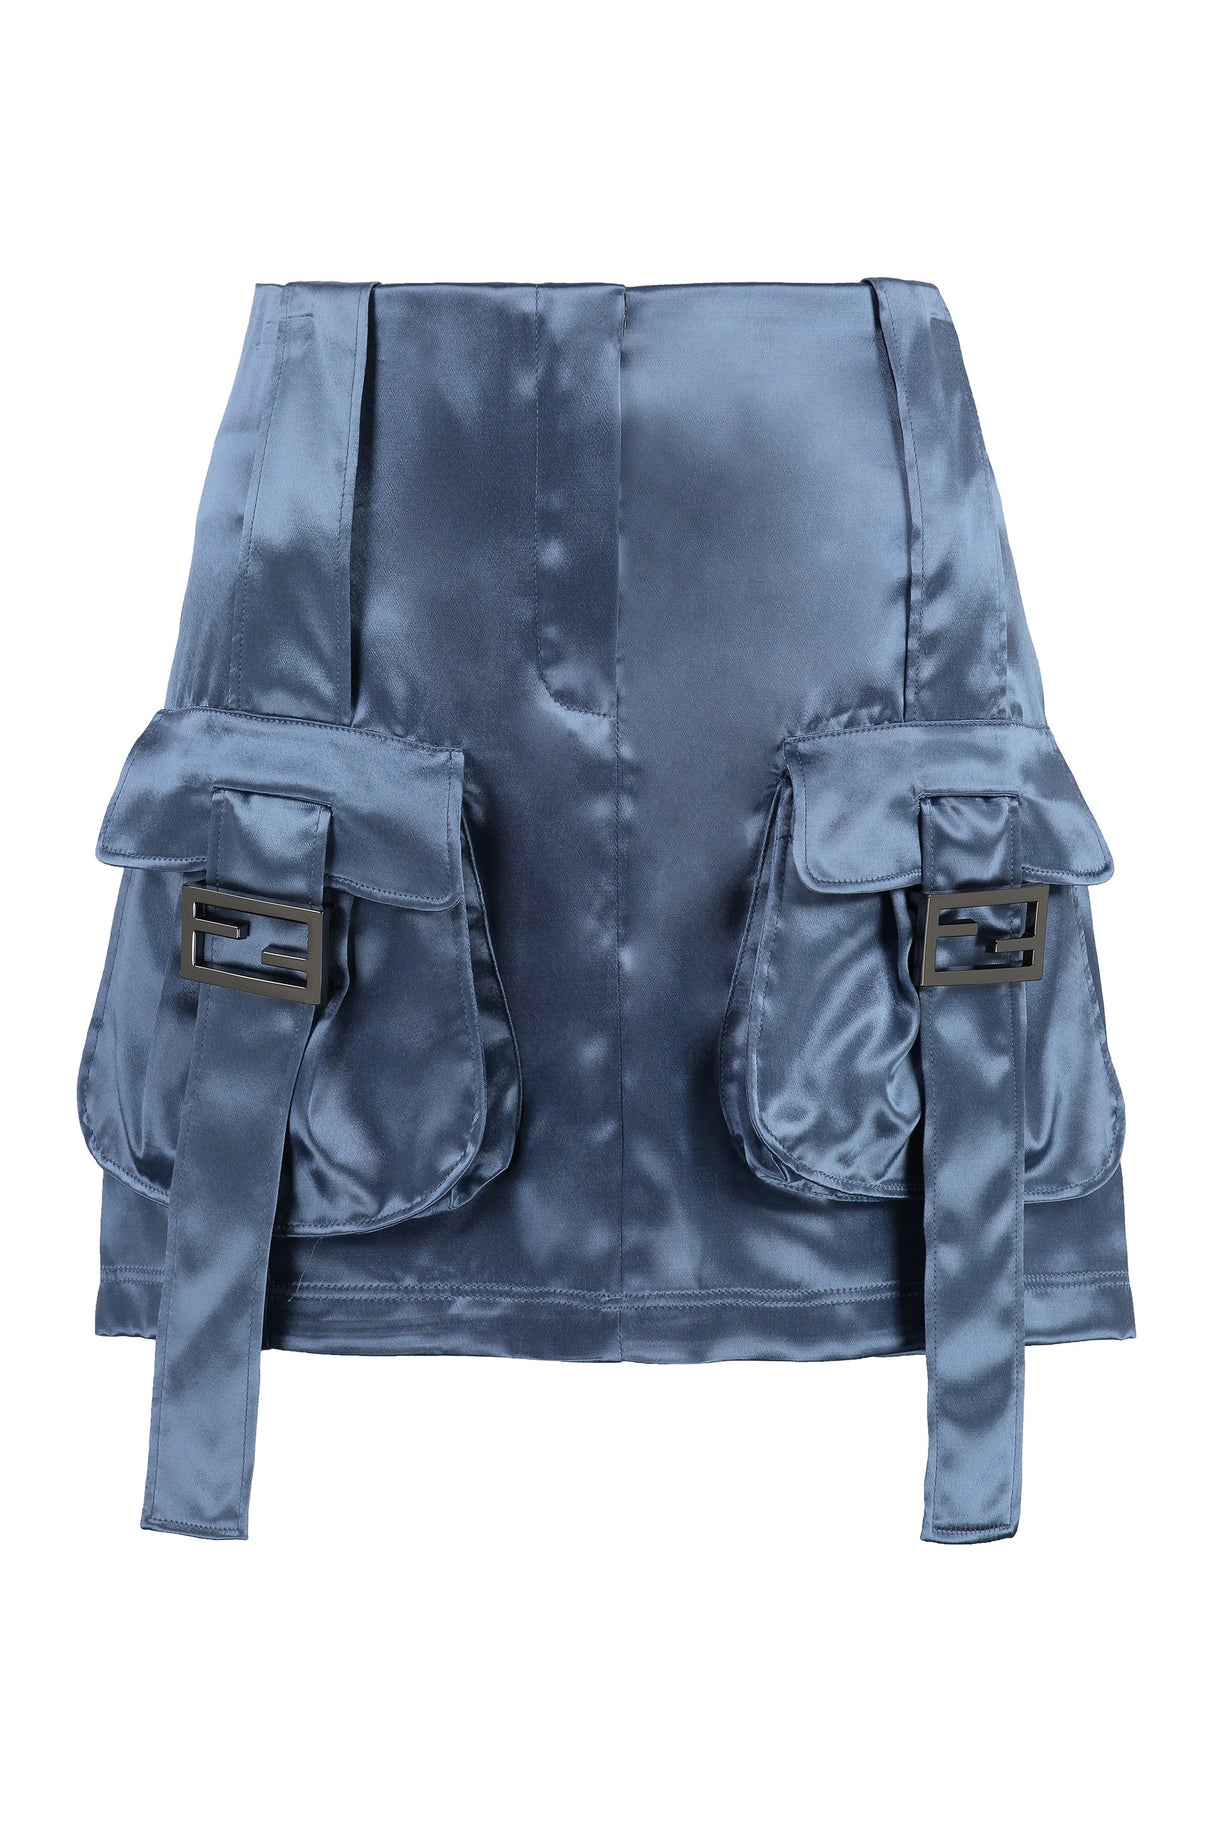 FENDI Powder Blue Satin Skirt for Women